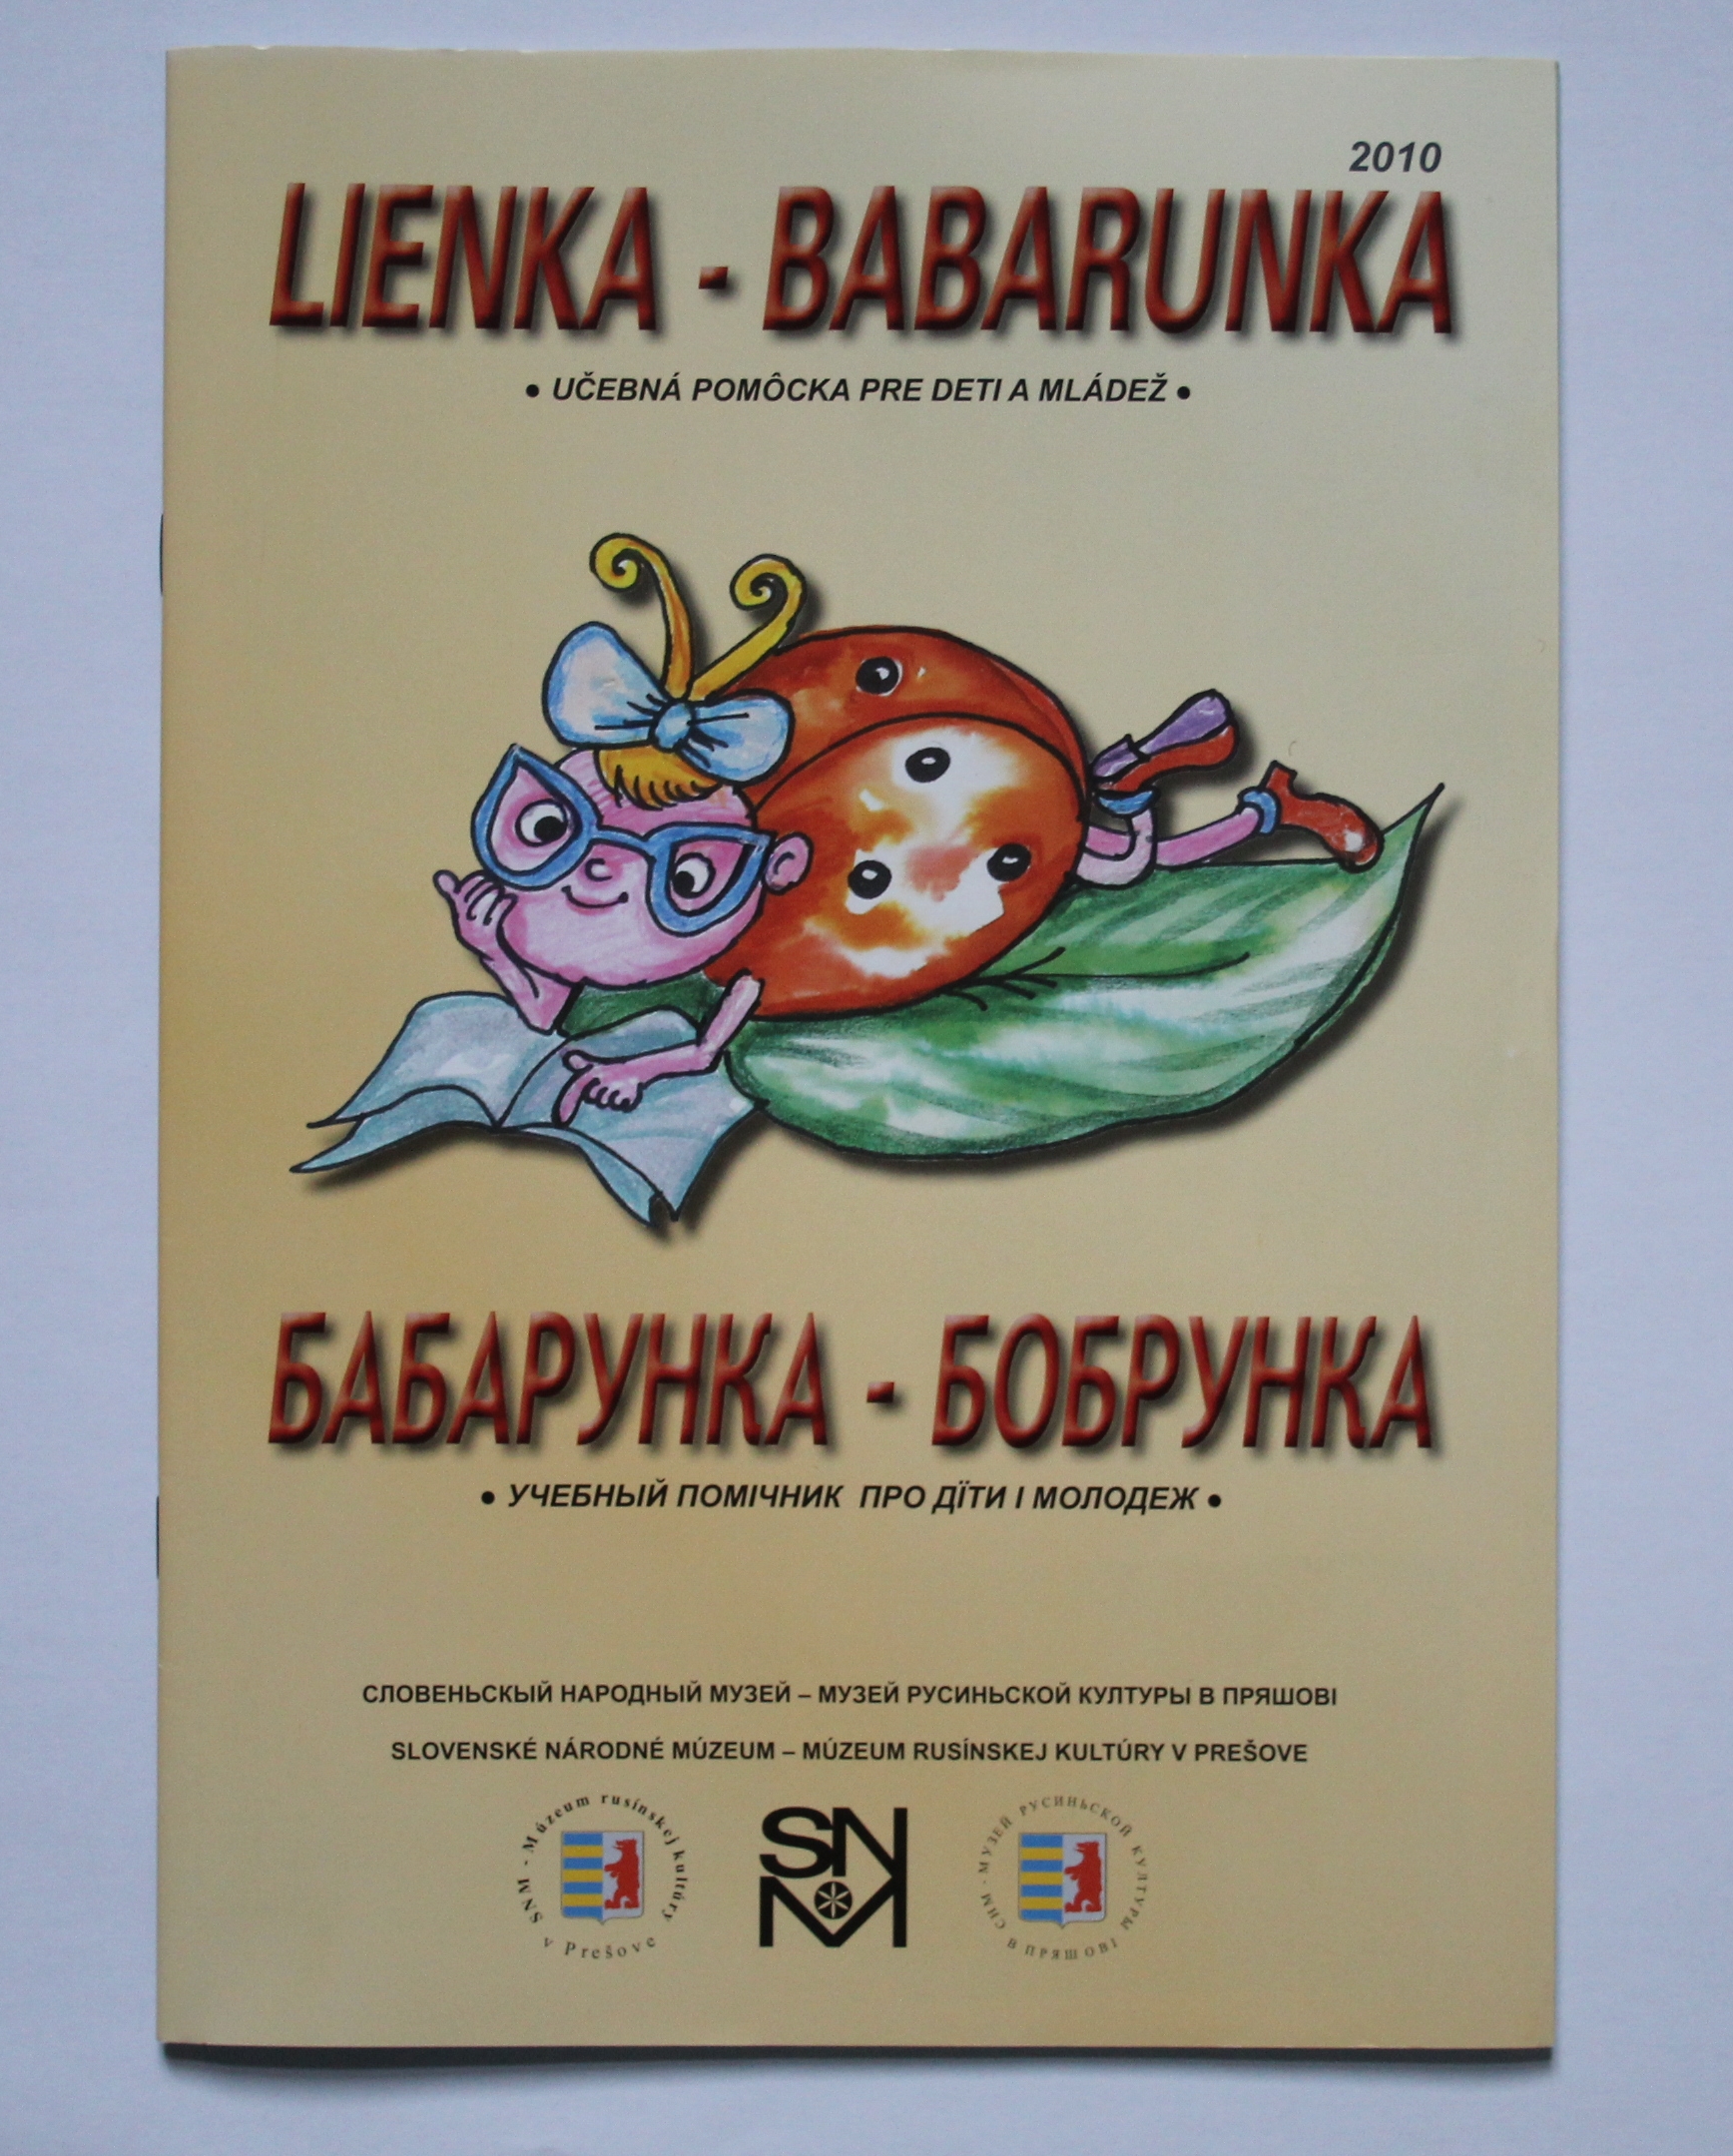 Lienka - Babarunka